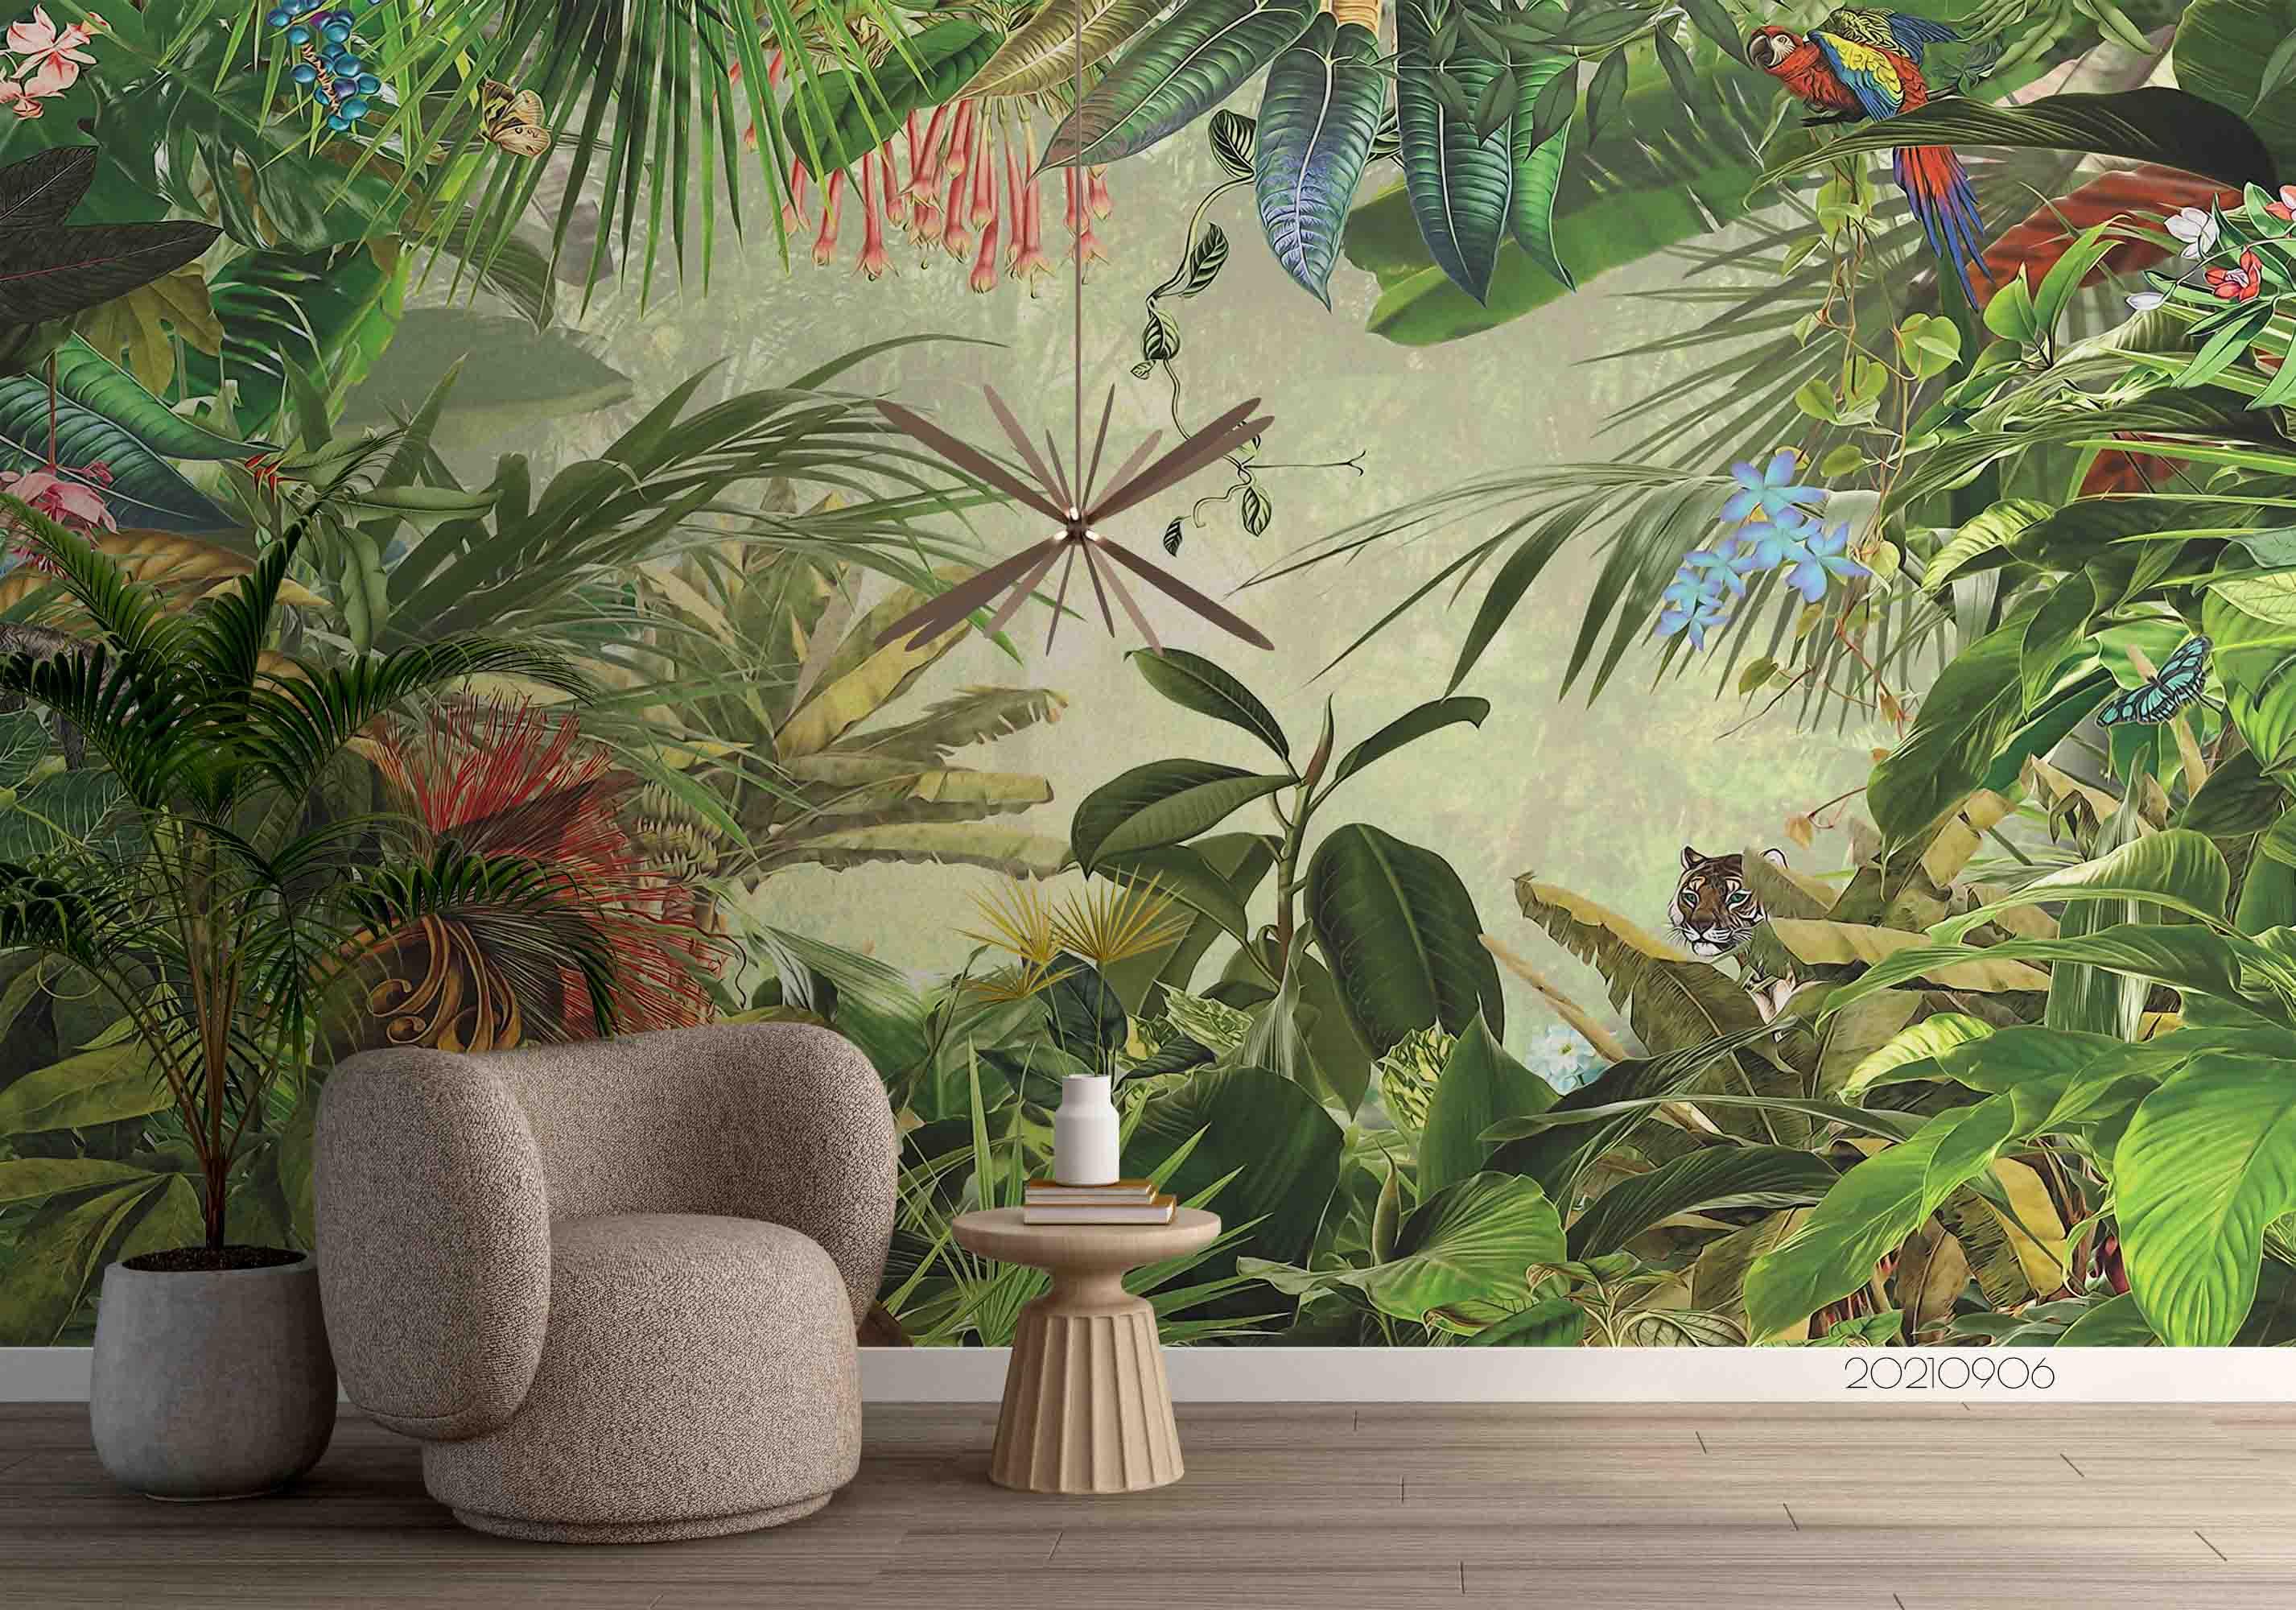 3D Tropical Jungle Bird Wall Mural Wallpaper LQH 544- Jess Art Decoration